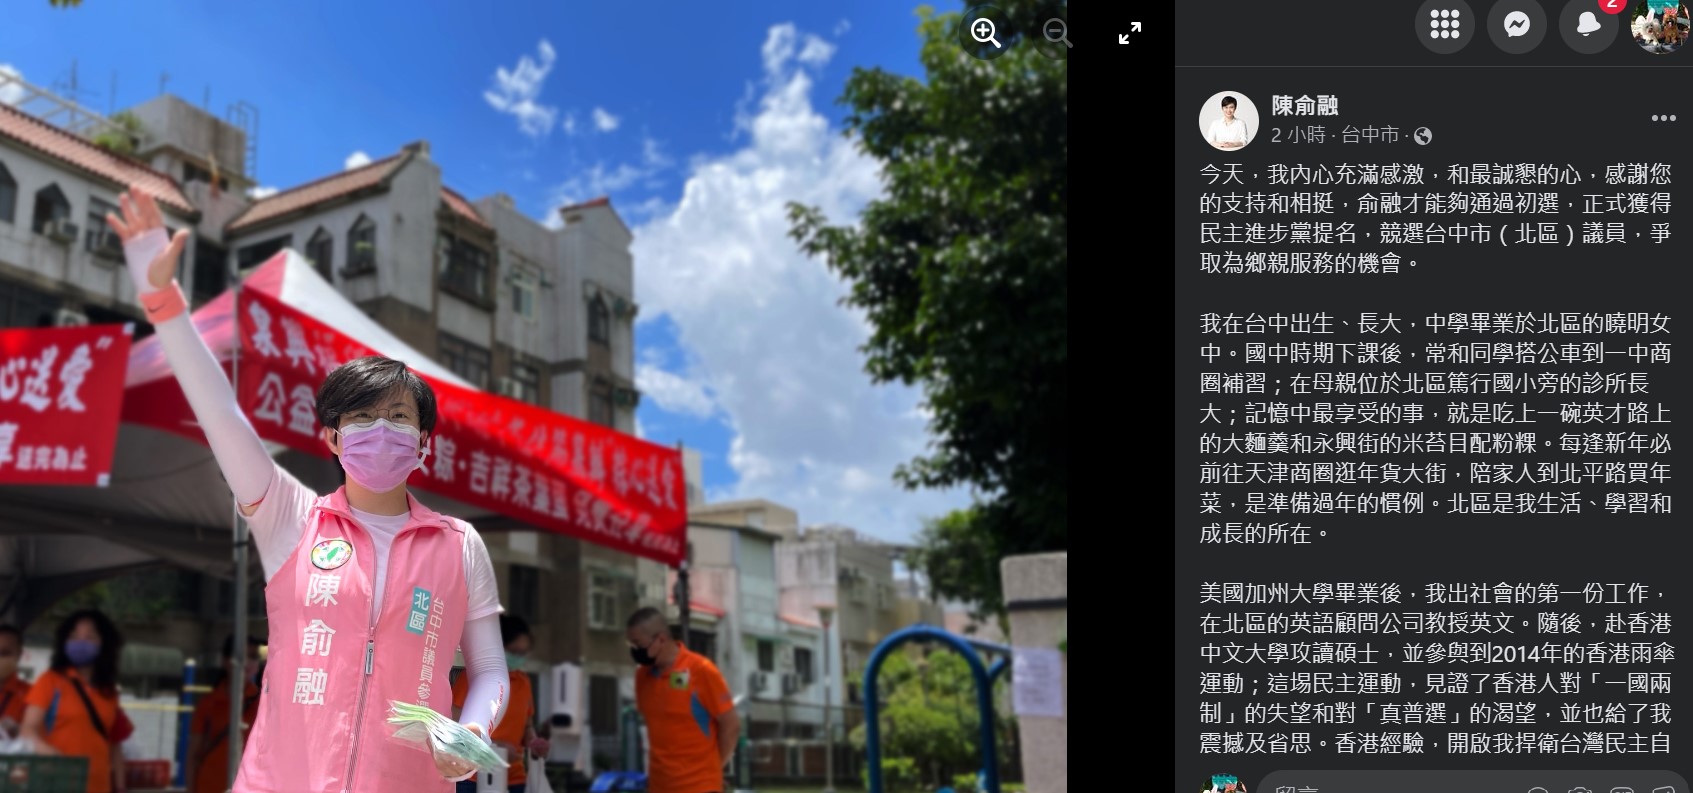 民進黨議員參選人陳俞融成立粉絲專頁　網友留言加油打氣